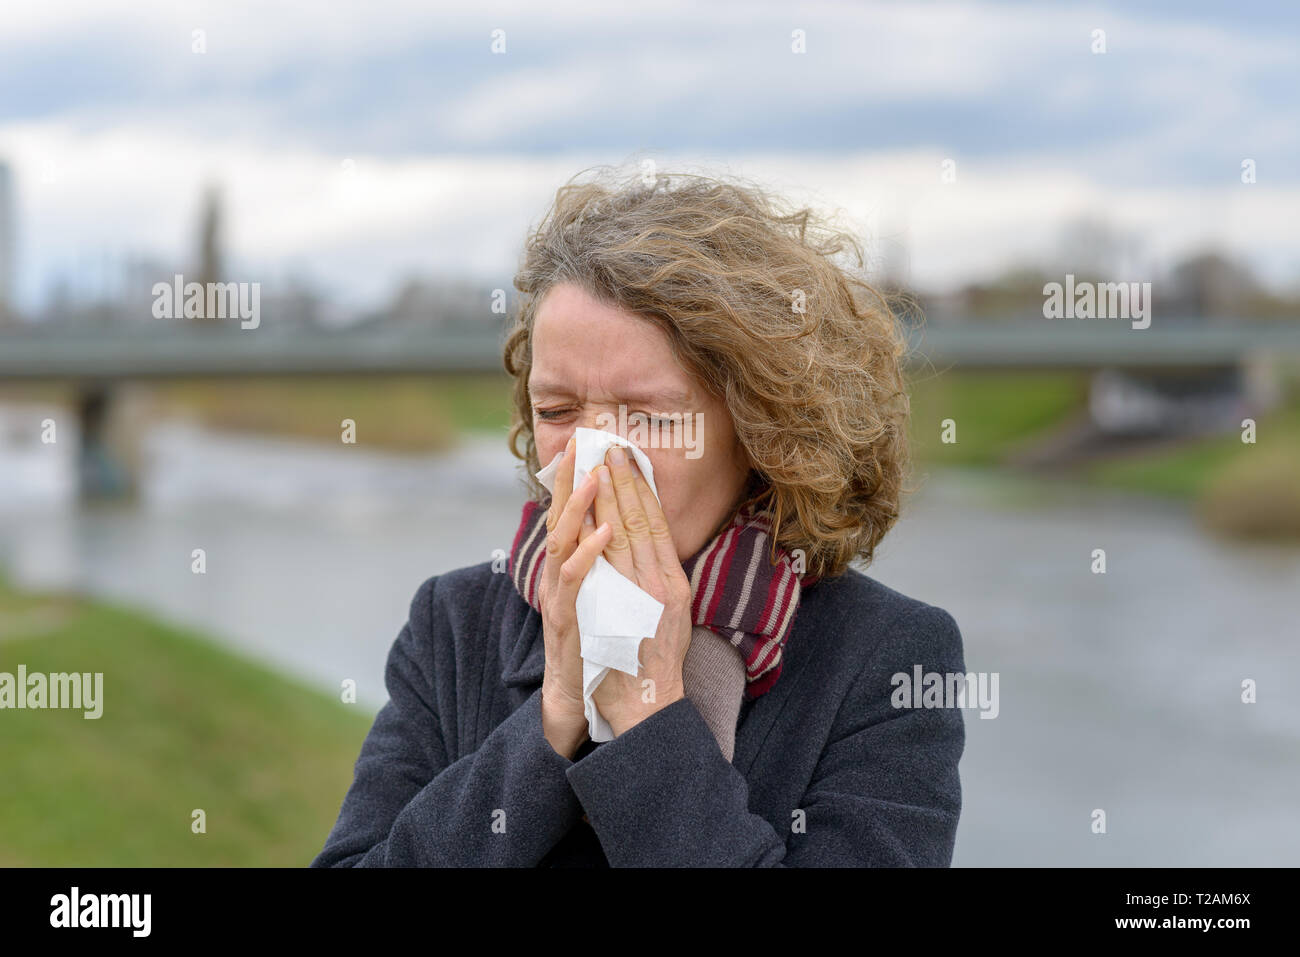 Frau trägt einen warmen Winter Mantel und Schal ihre Nase weht auf ein Gewebe im Freien in einer kalten, bewölkten Tag in ein Konzept der kranken Gesundheit, Erkältungen und Grippe oder r Stockfoto